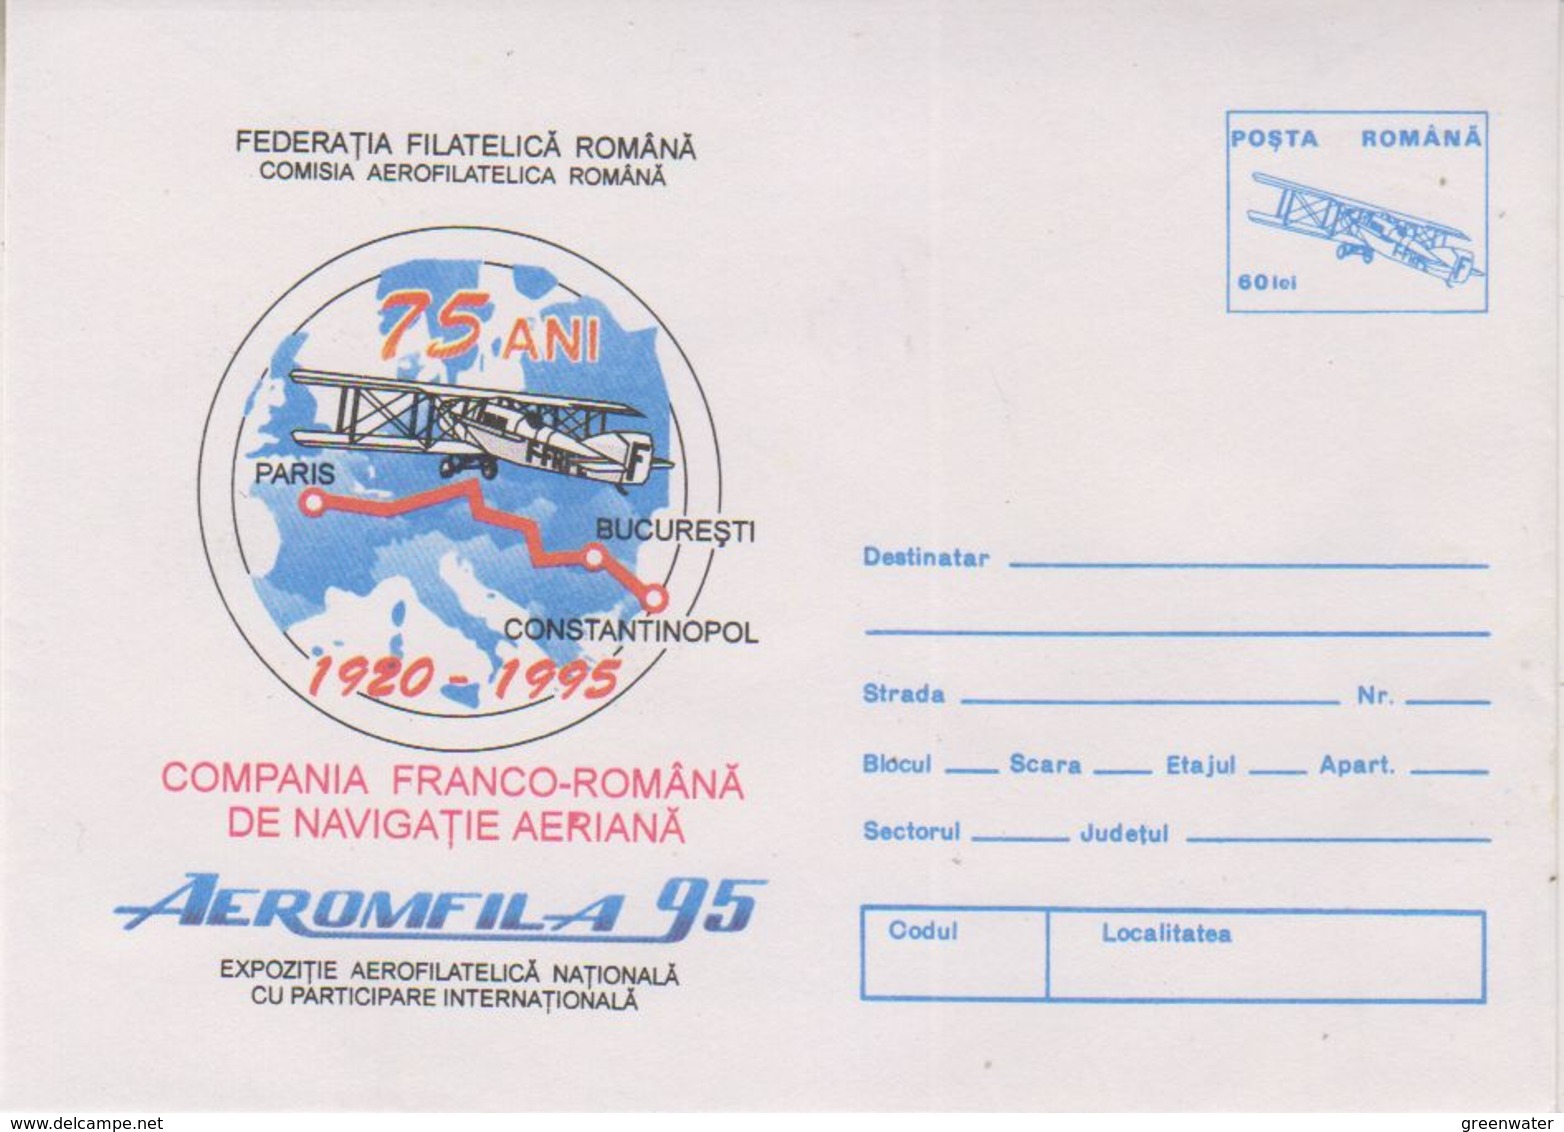 Romania 1995 Aeromfila Postal Stationery Unused (38588) - Covers & Documents